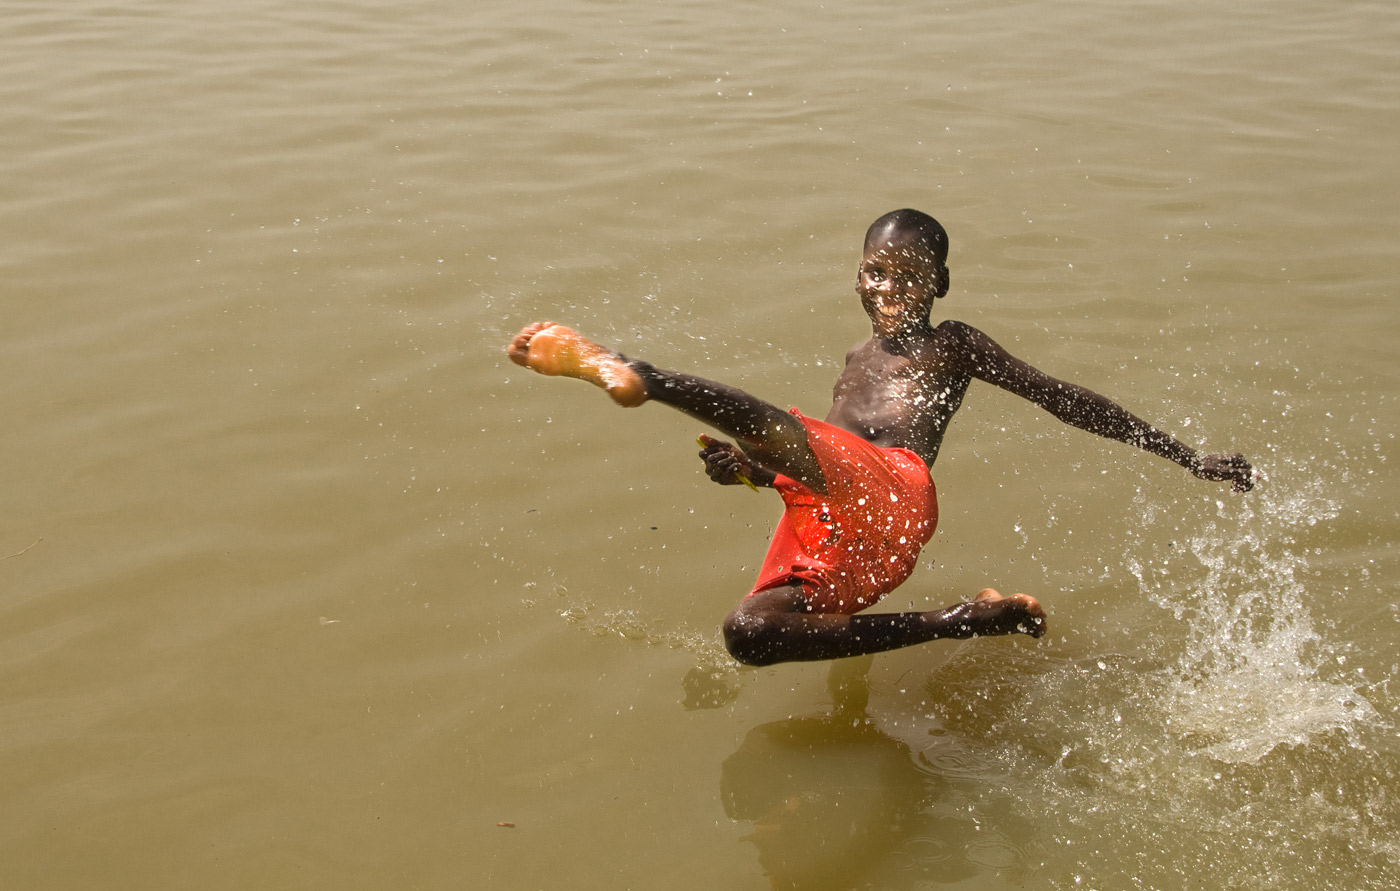 Bath in the Niger, Mopti, 2009